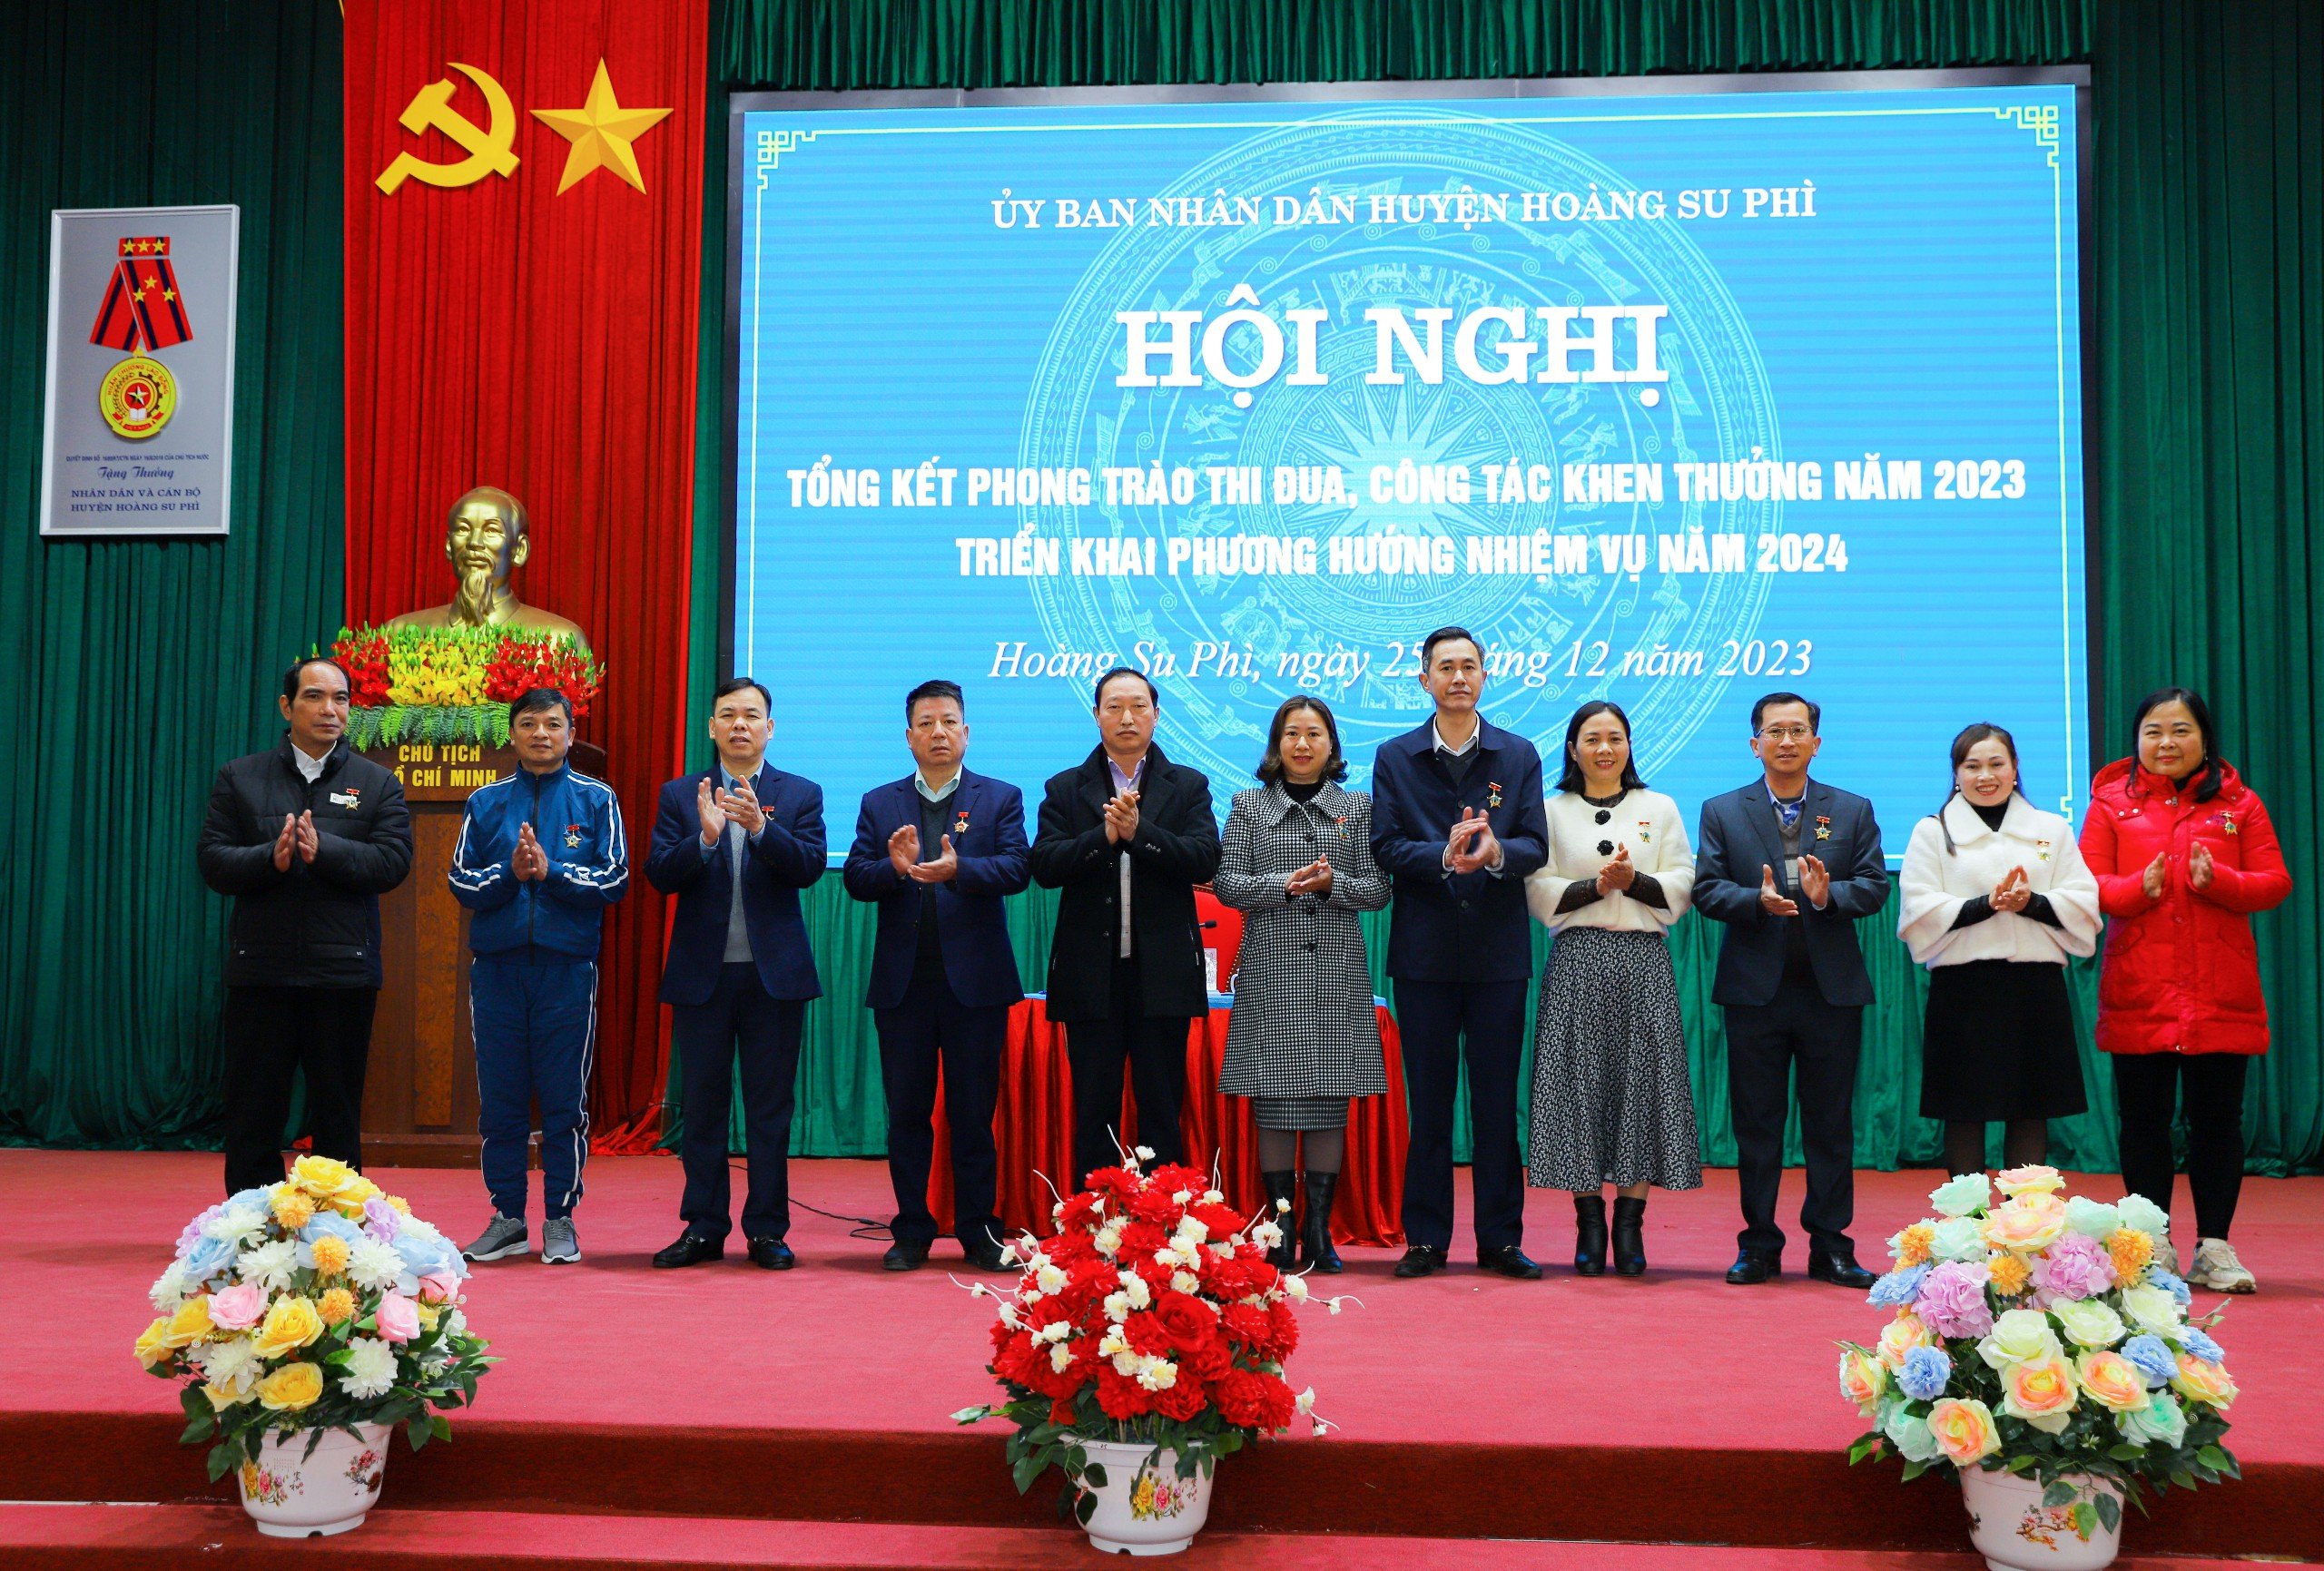 Huyện Hoàng Su Phì tổng kết phong trào thi đua, công tác khen thưởng năm 2023 và triển khai nhiệm vụ năm 2024